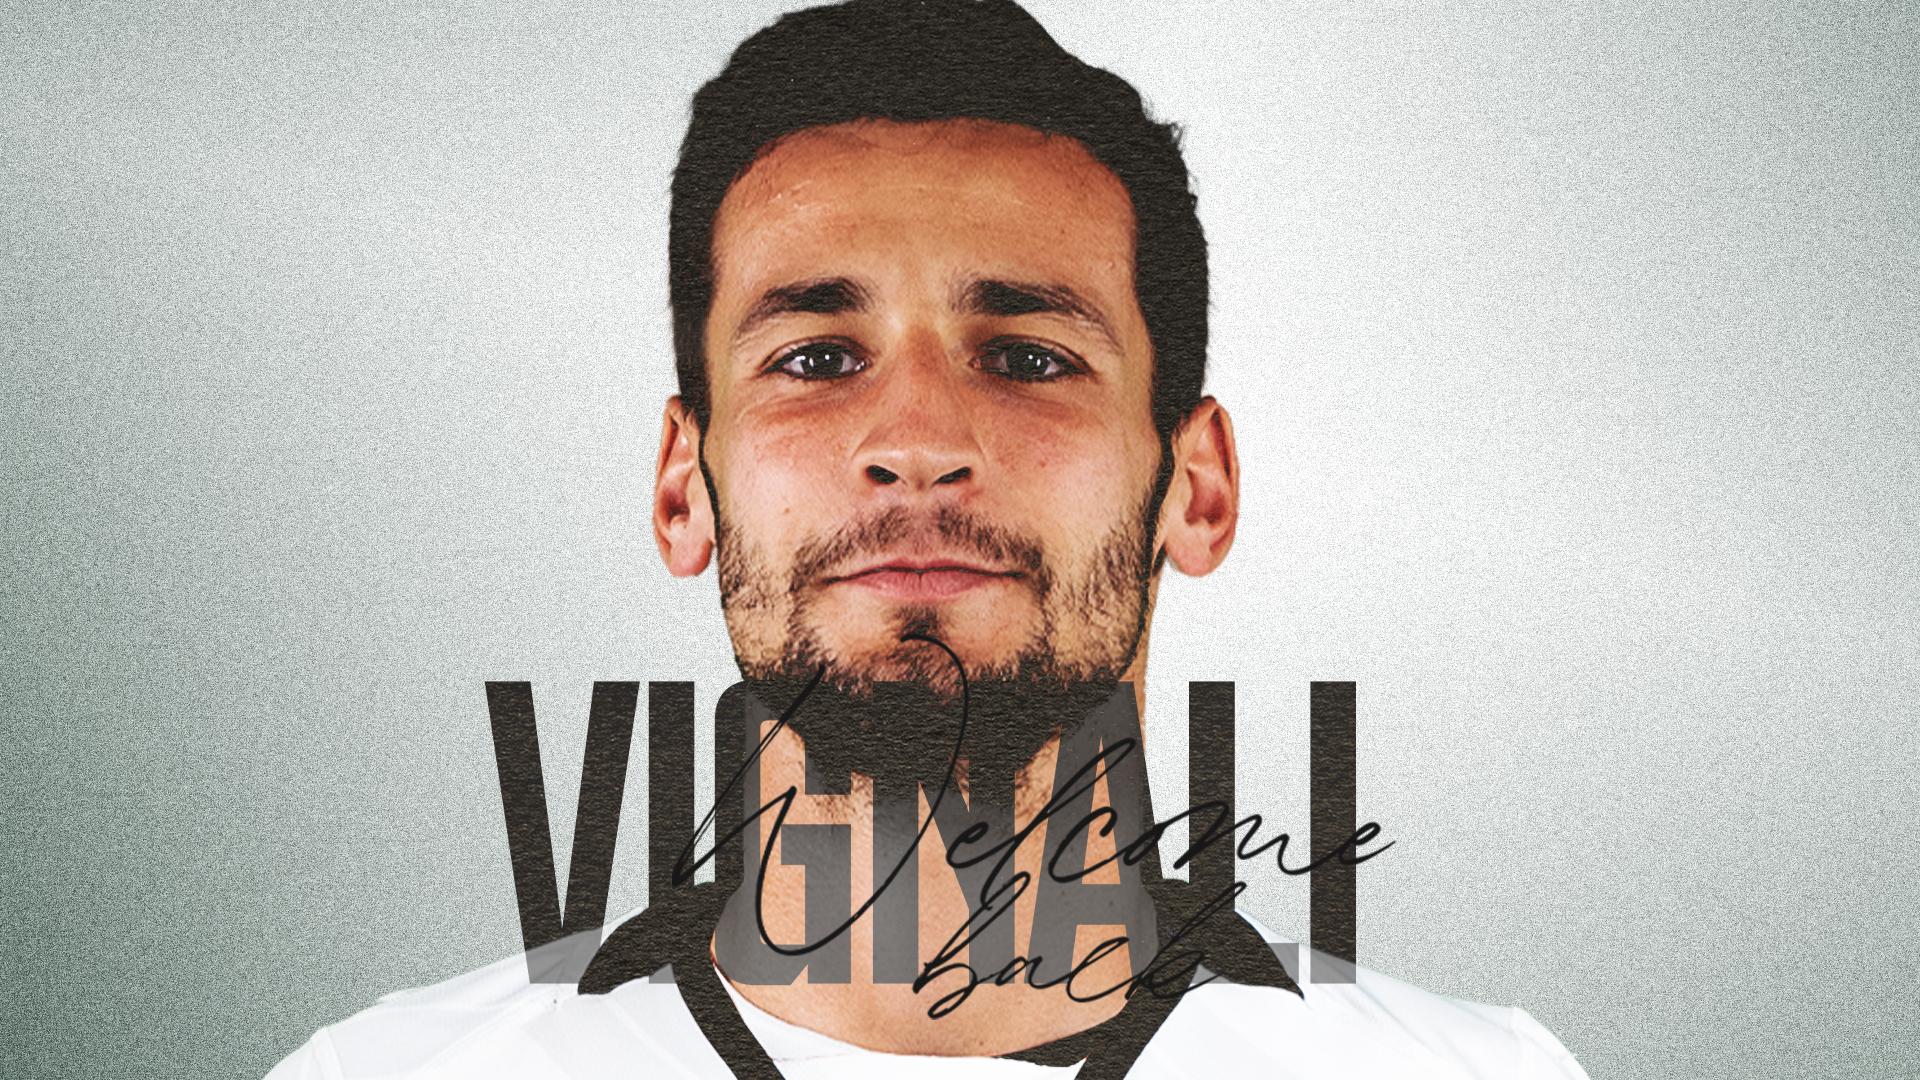 Ufficiale | Luca Vignali è un nuovo calciatore dello Spezia